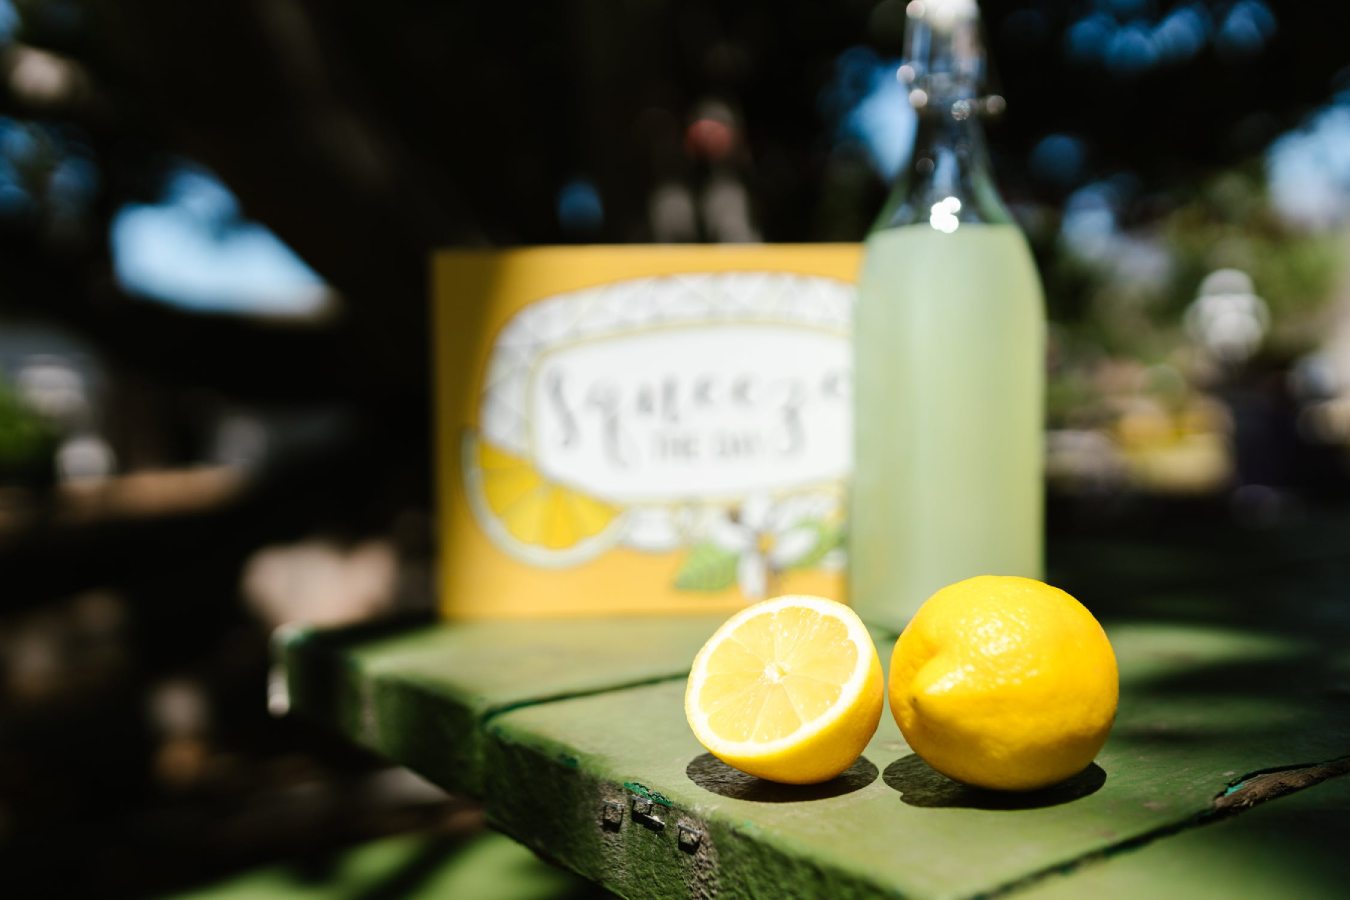 Как приготовить лучший домашний лимонад